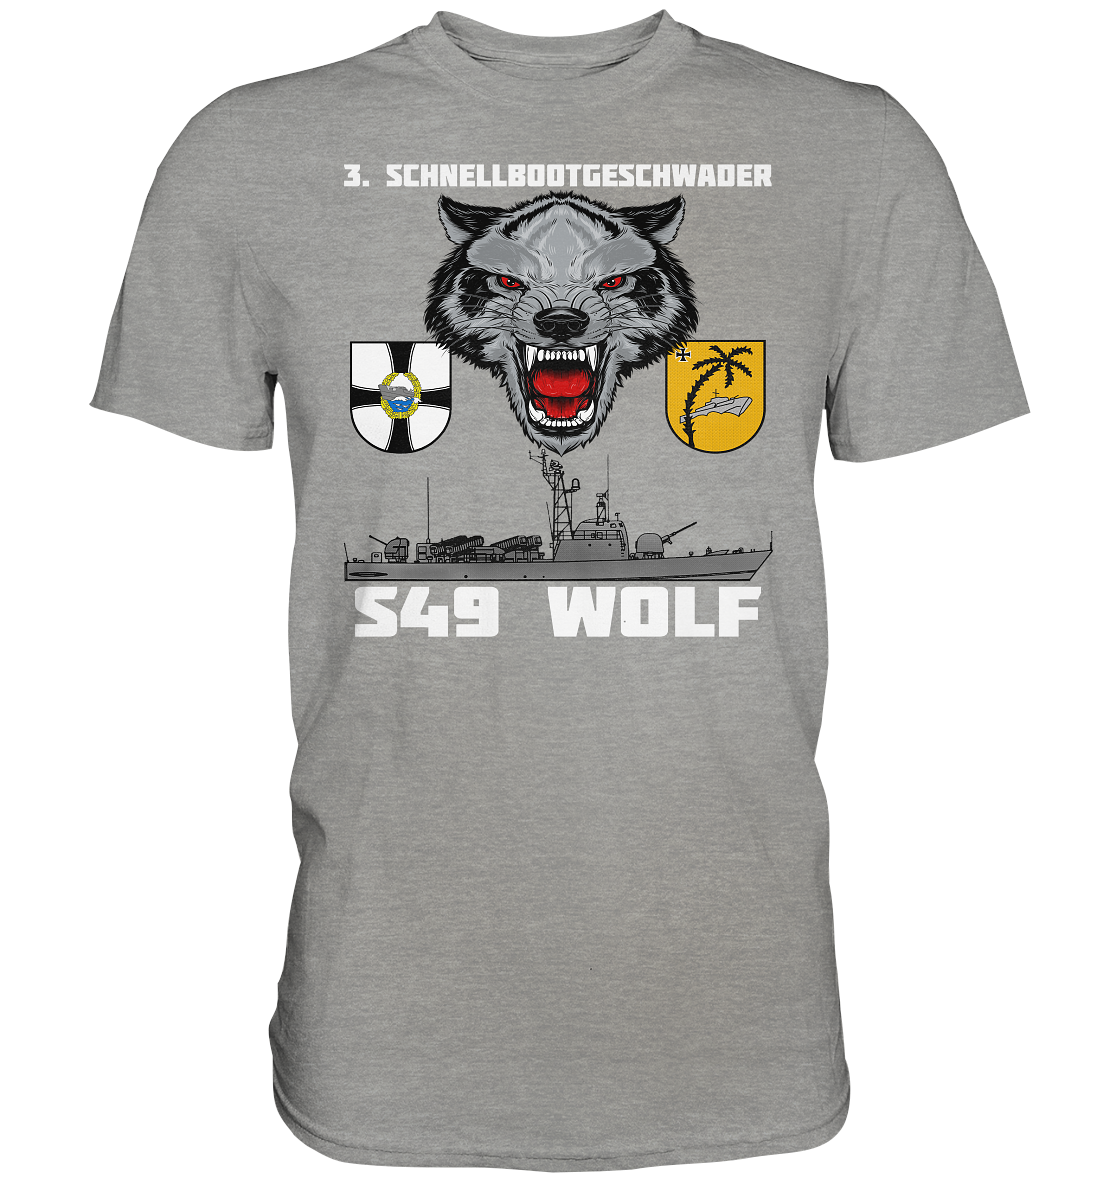 S49 WOLF - Premium Shirt